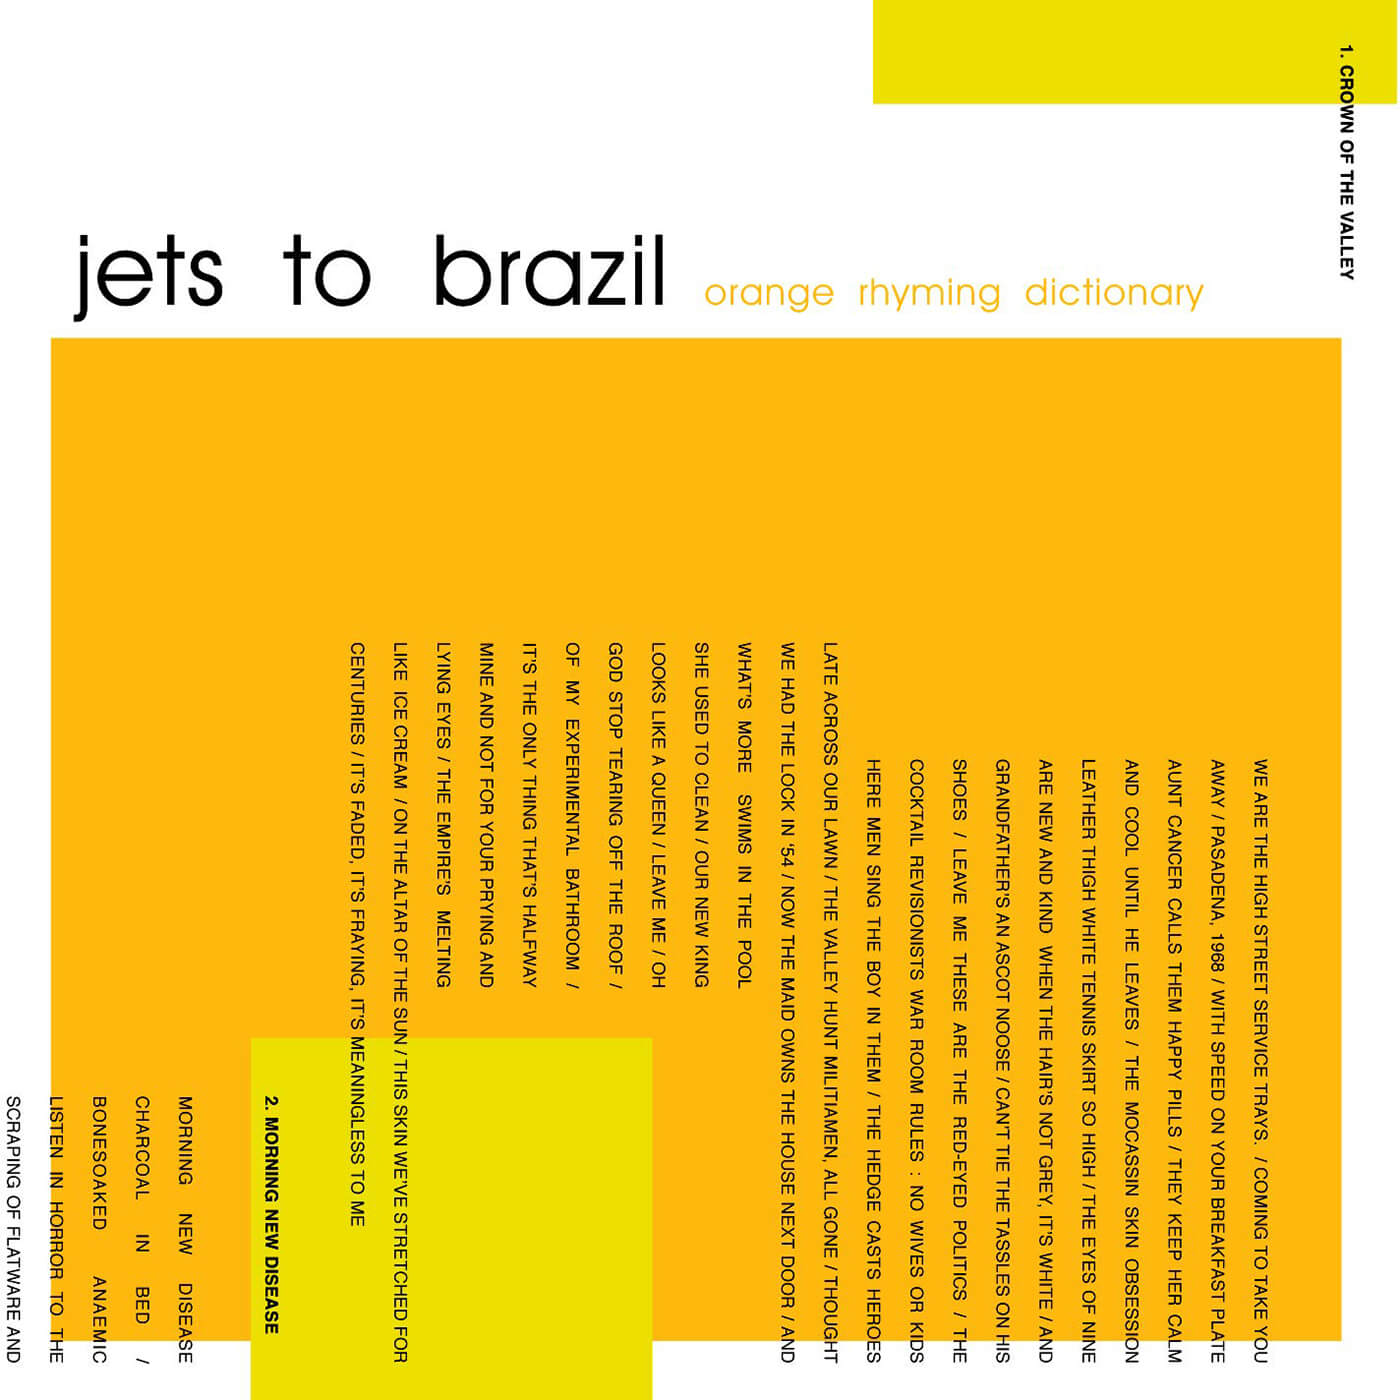 飞机到巴西 - 橙色押韵词典